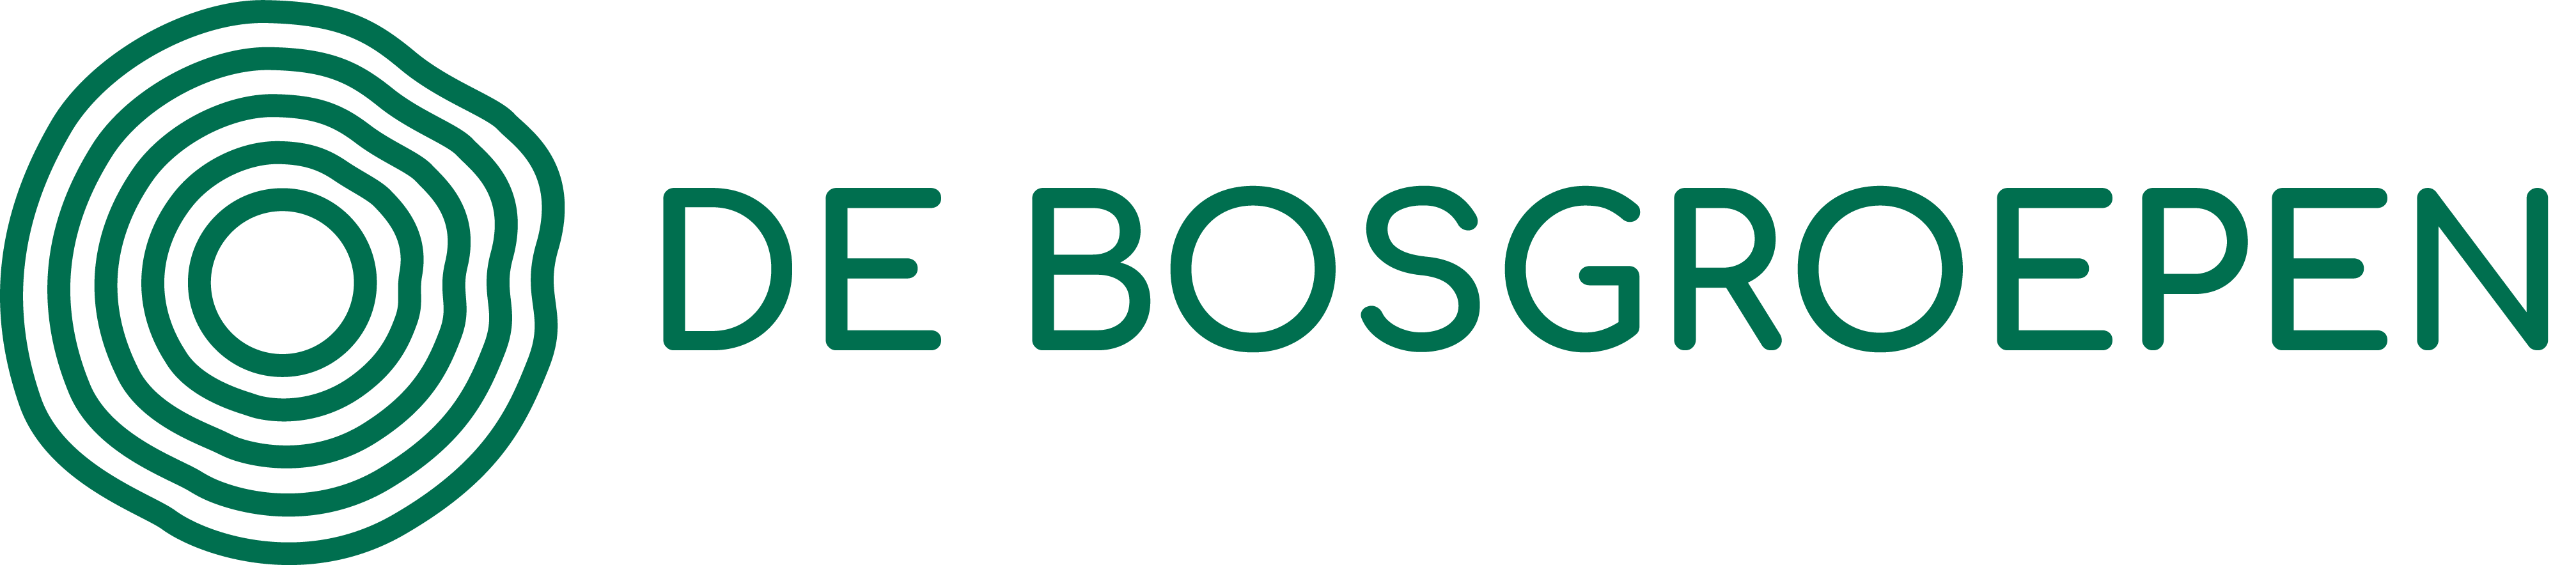 Bosgroep Logo 